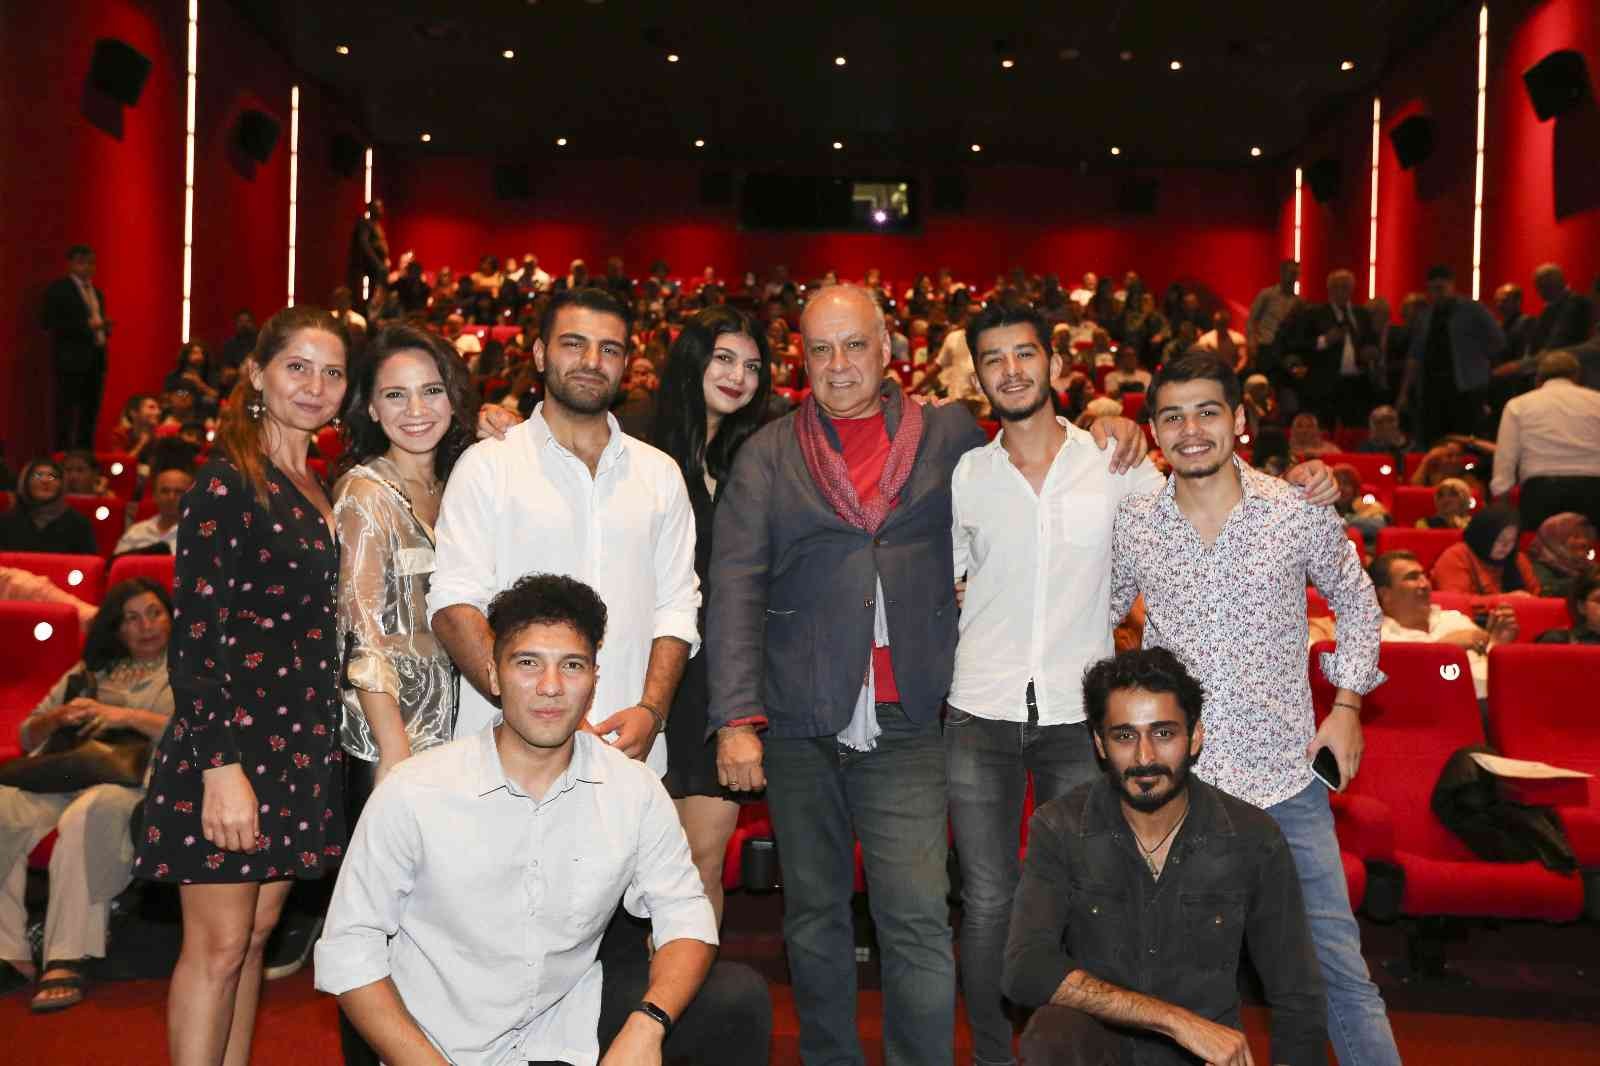 Efeler’in filmleri uluslararası başarılarına devam ediyor #aydin